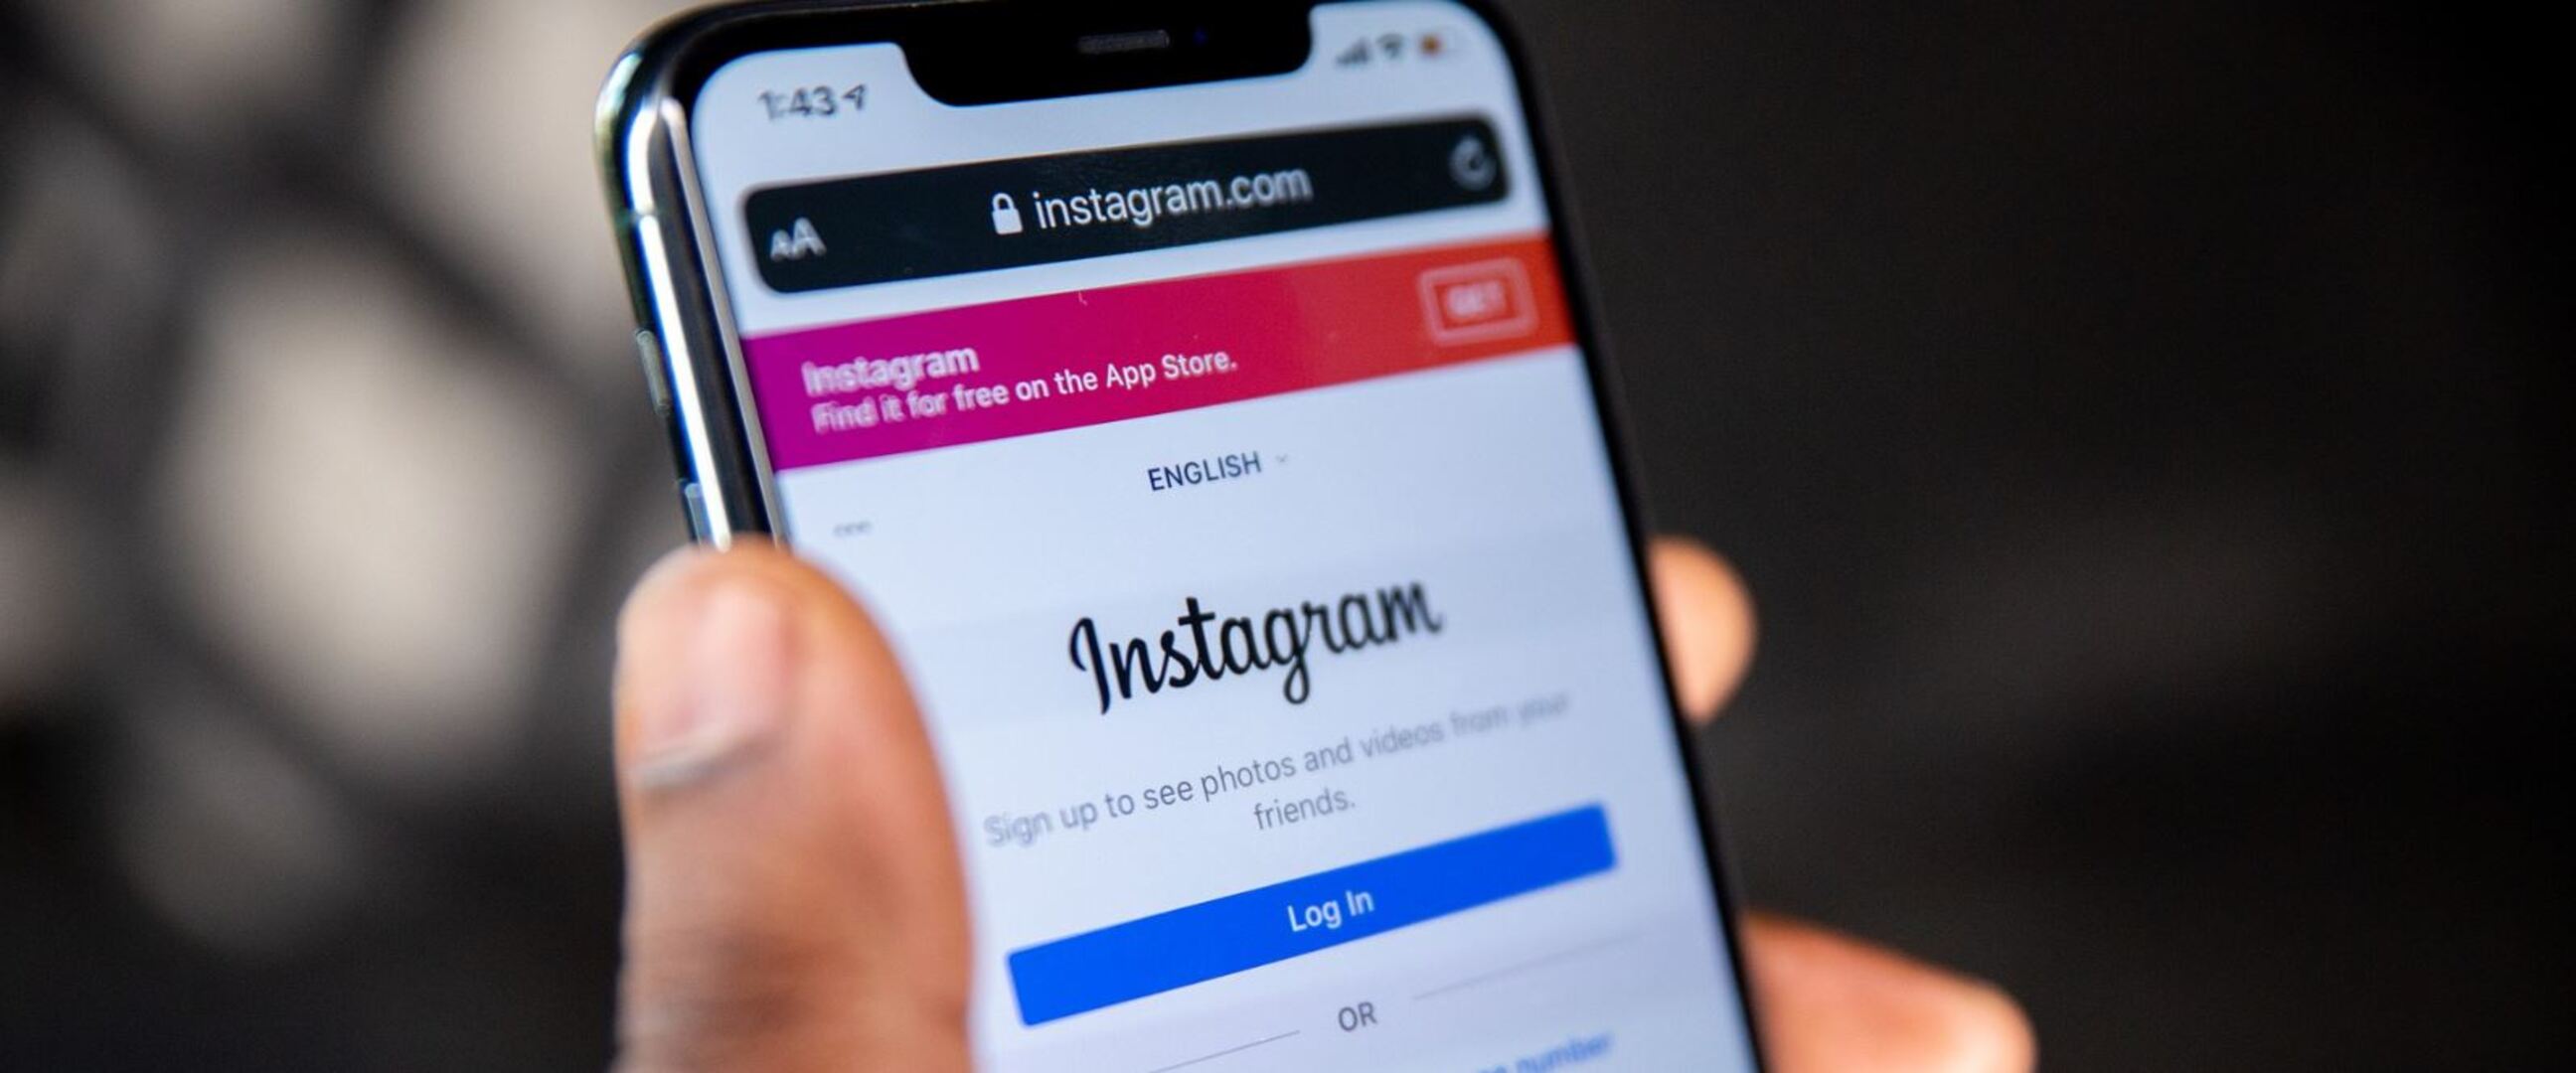 Berantas akun bot, Instagram minta user verifikasi lewat video selfie